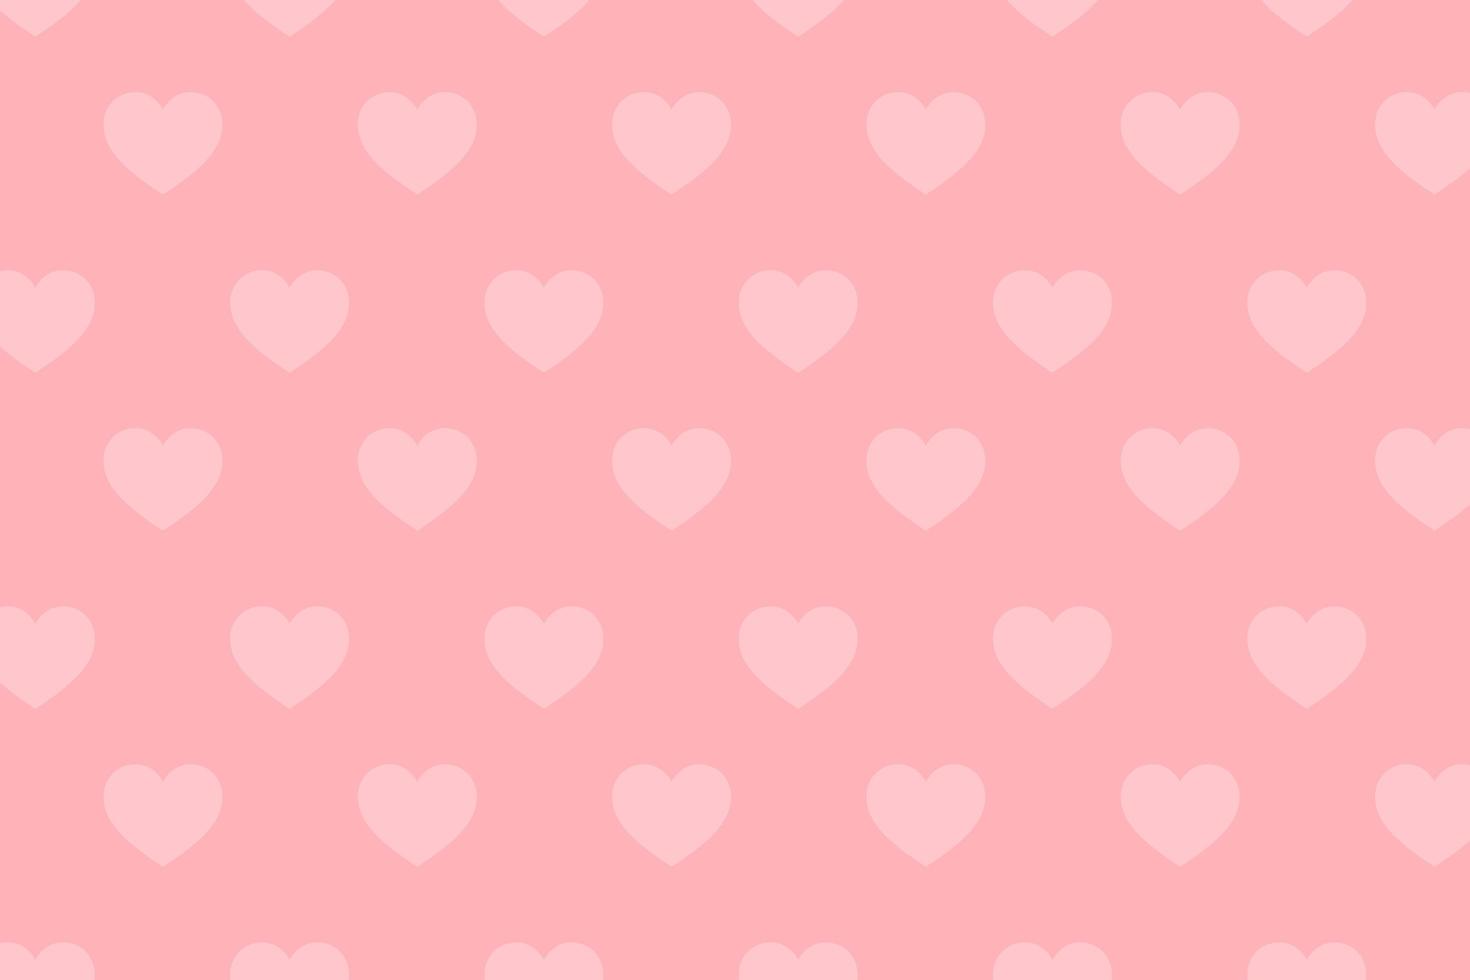 patroon van witte harten op roze achtergrond voor Valentijnsdag wenskaart foto